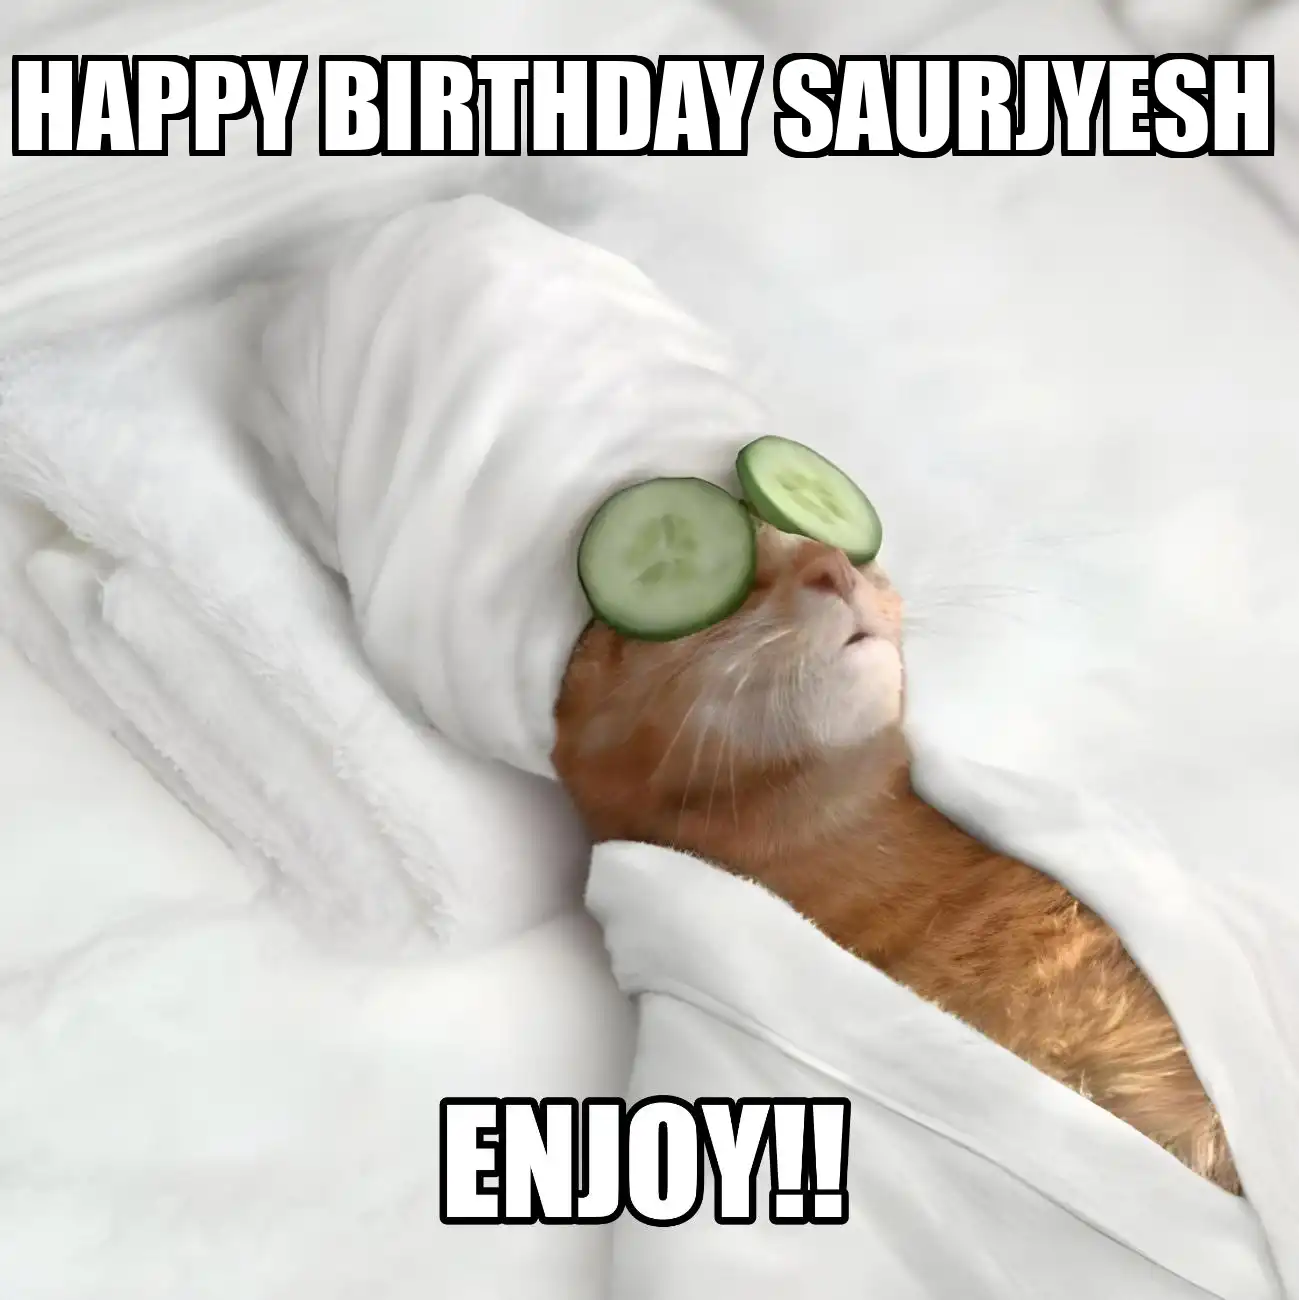 Happy Birthday Saurjyesh Enjoy Cat Meme